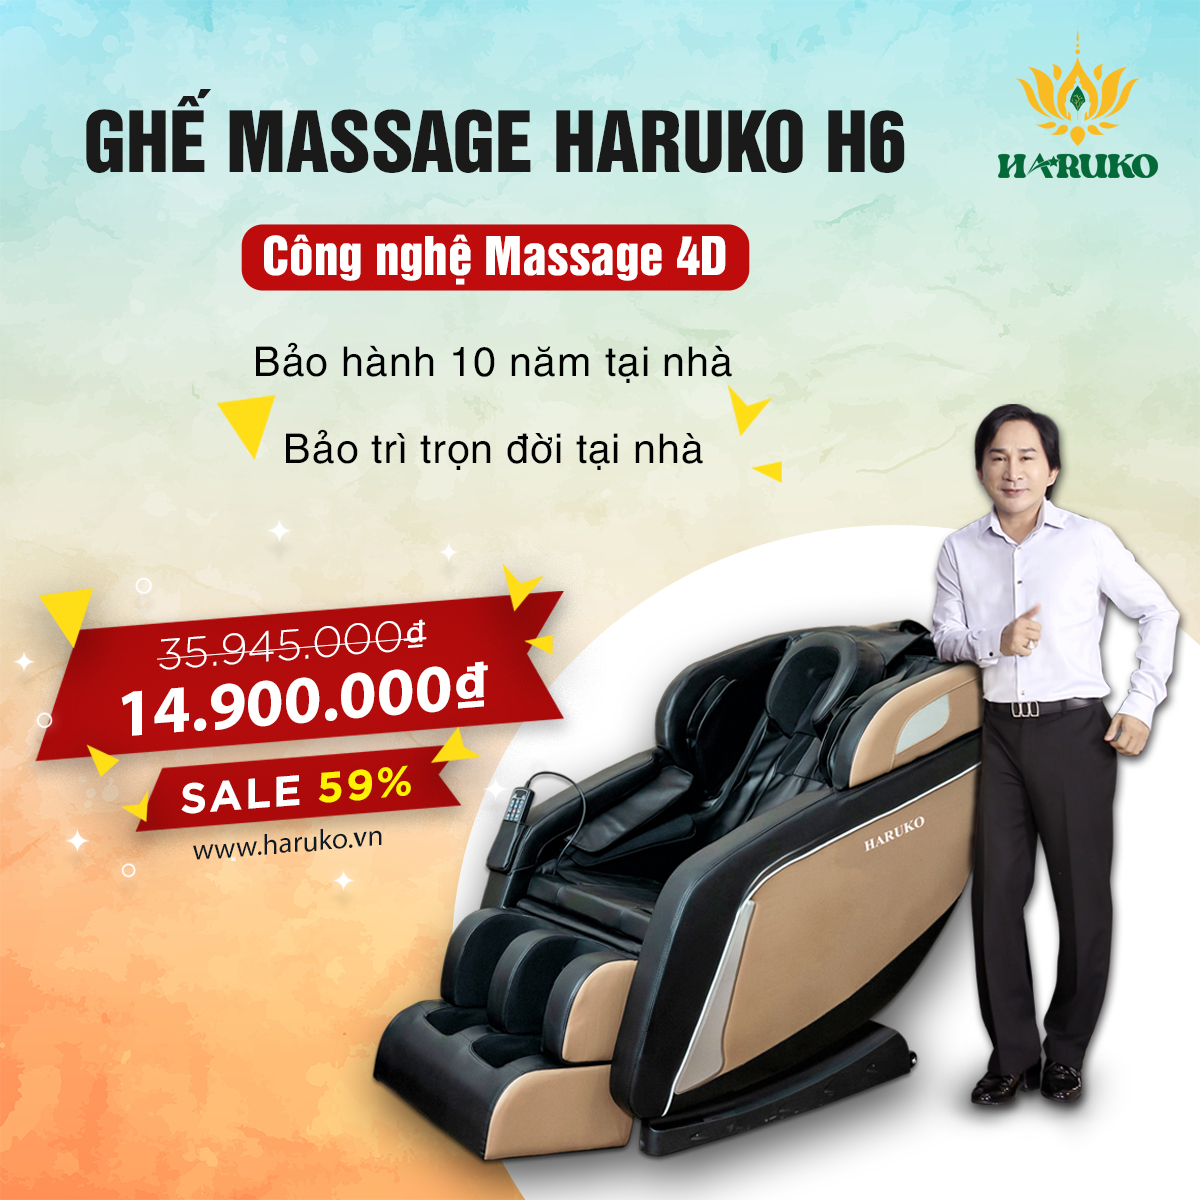 Ghế massage Haruko-H6 với công nghệ massage 4D tạo cảm giác thoải mái đối với người sử dụng